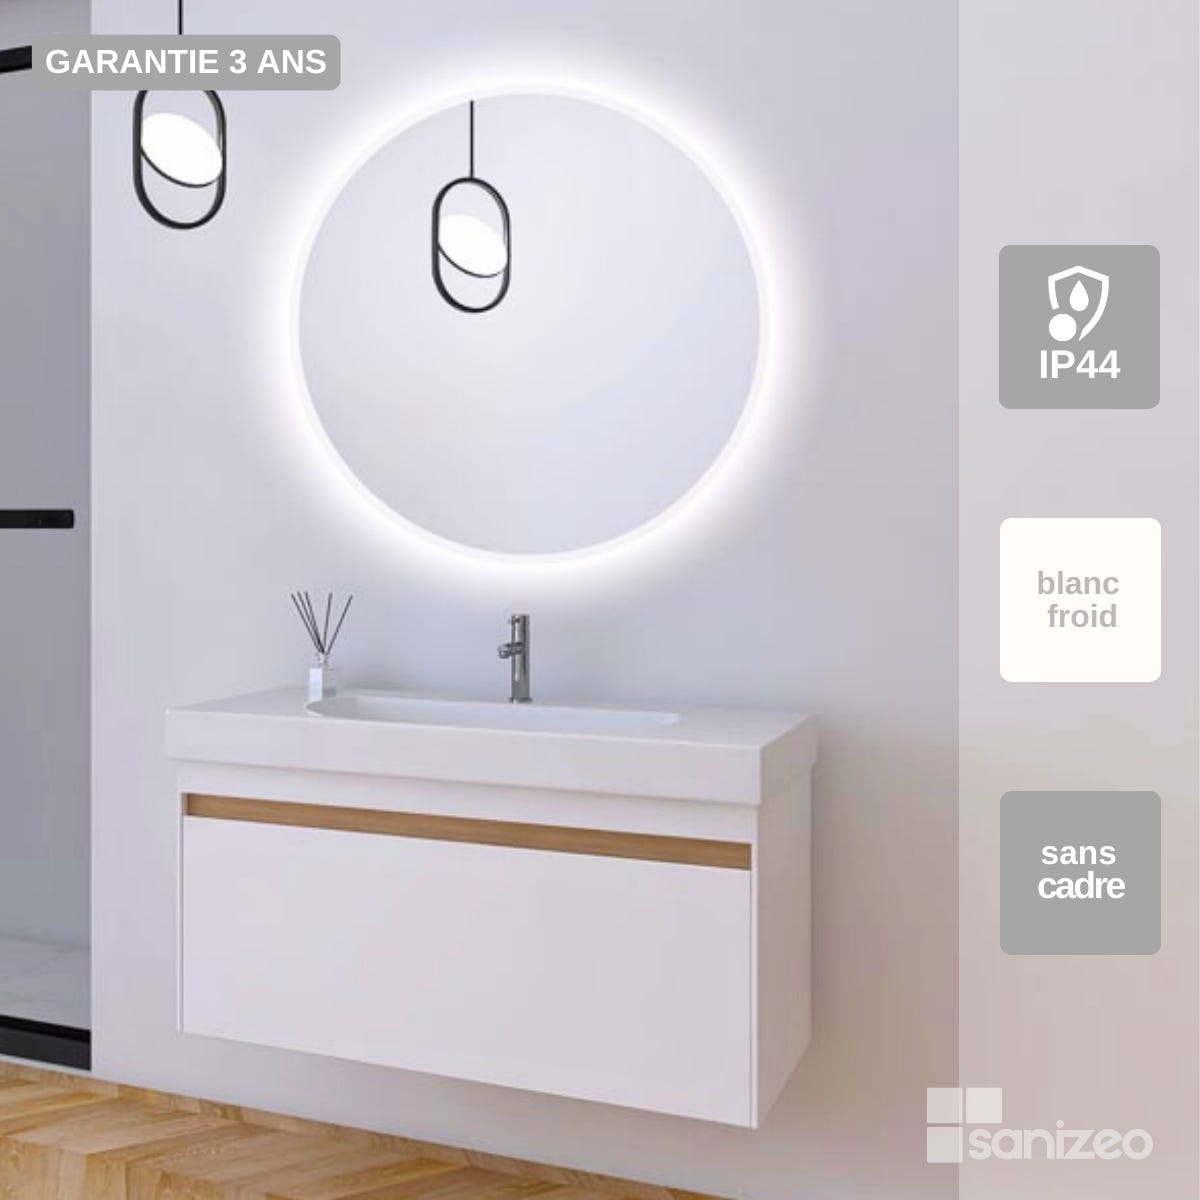 Espejo redondo con luz led frontal Serie Belgica - Espejo Baño